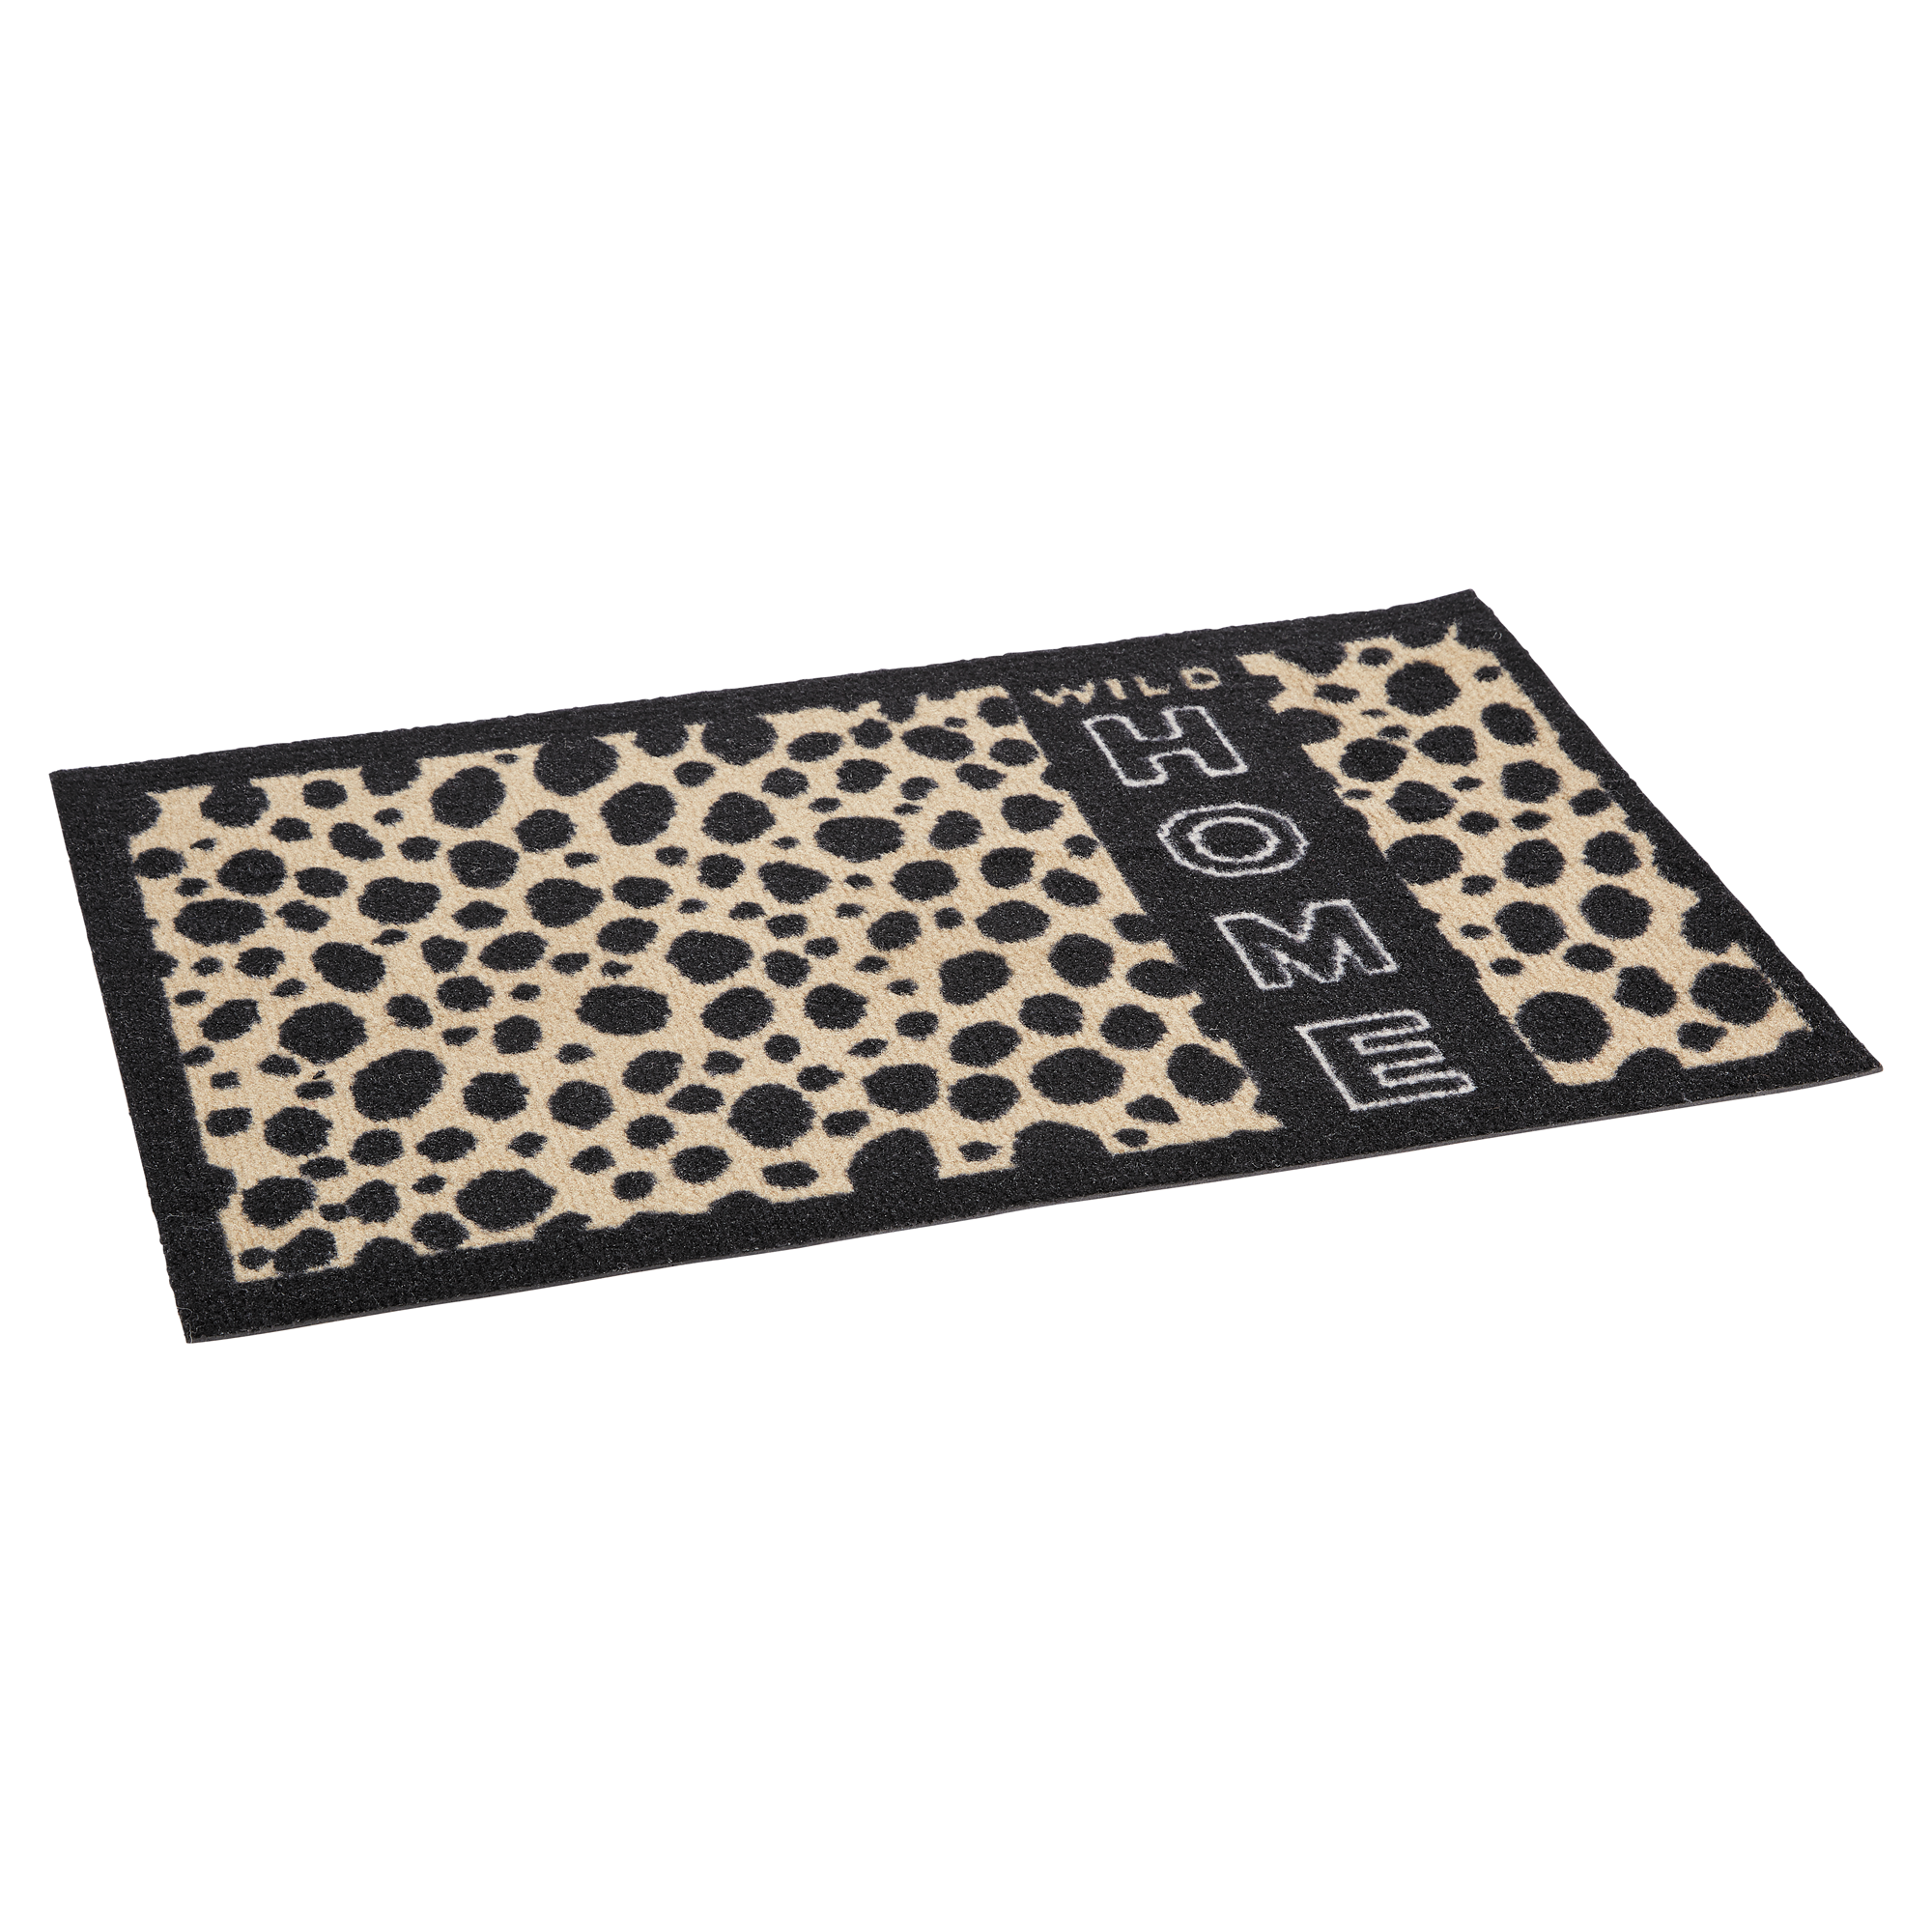 Fußmatte "Gepard" Polyamid hellbraun 58 x 39 cm + product picture